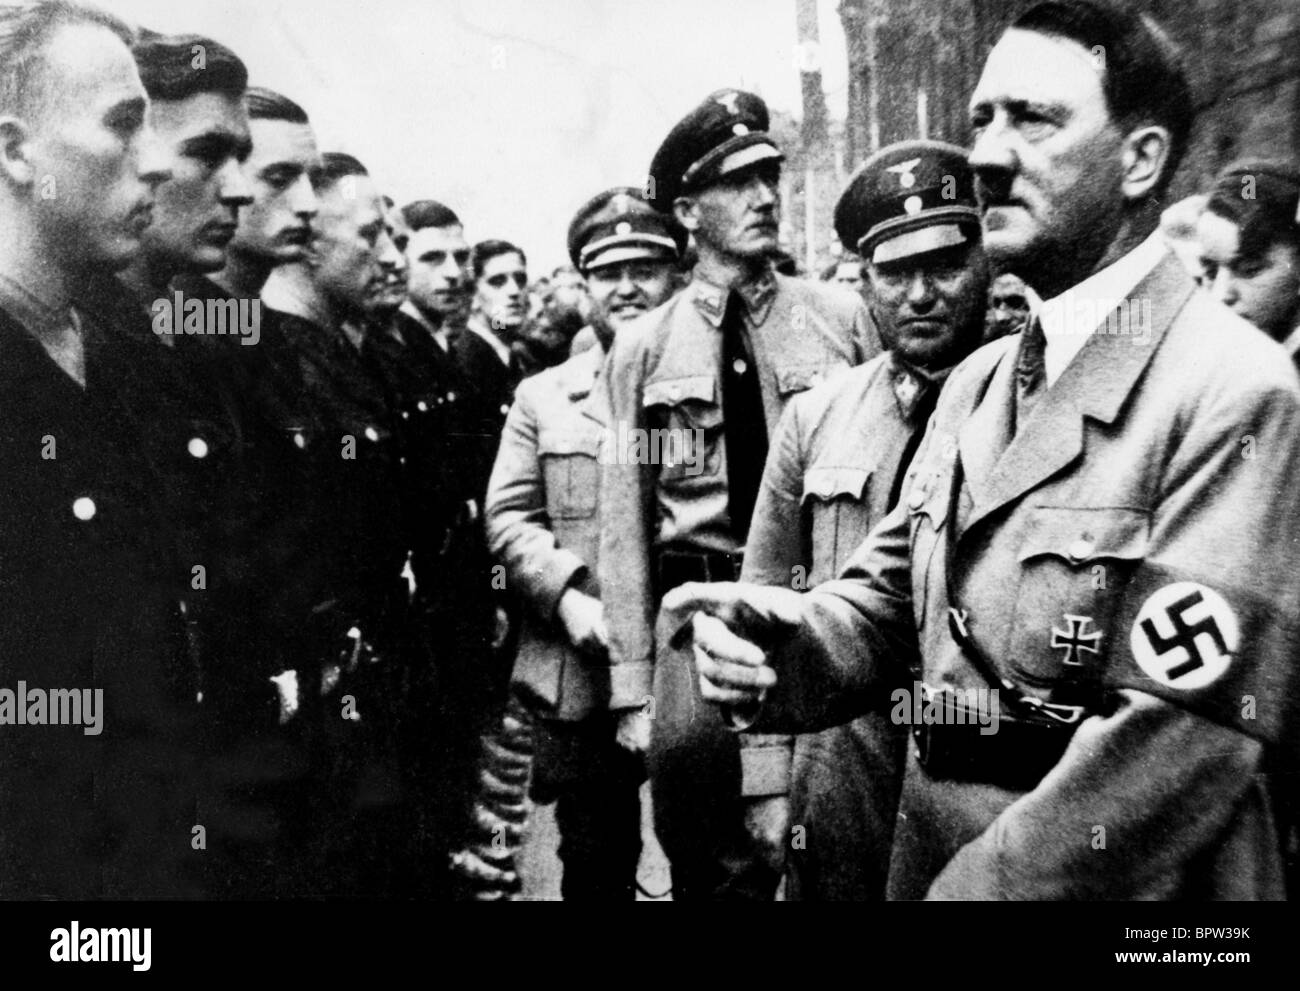 ADOLF HITLER NAZI LEADER 07 June 1944 Stock Photo